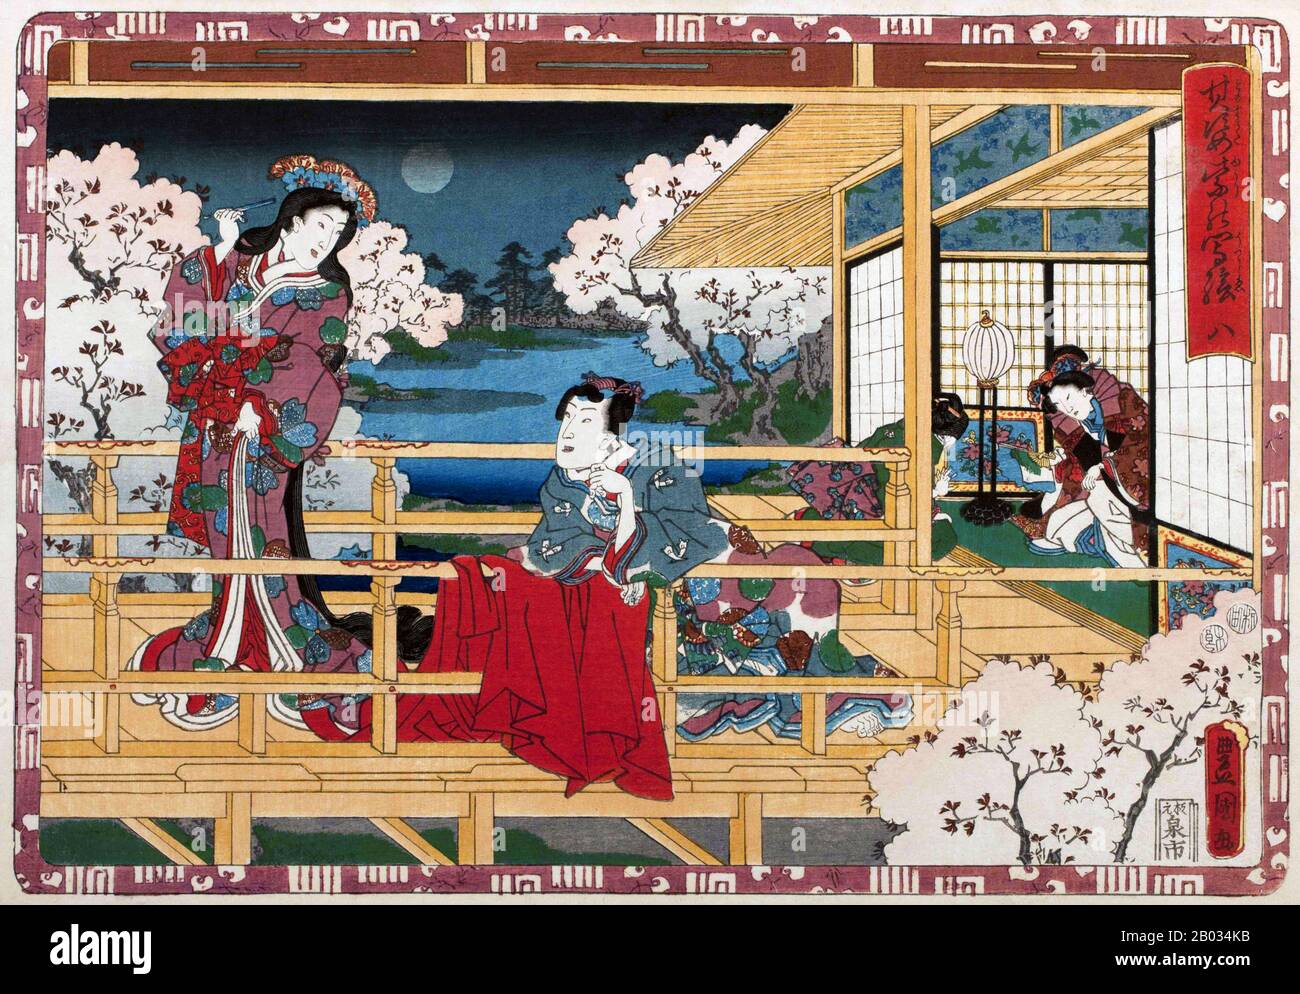 Le Tale de Genji (Genji Monogatari) est une oeuvre classique de littérature  japonaise attribuée à la noblewoman japonais Murasaki Shikibu au début du  XIe siècle, autour du pic de la période Heian.